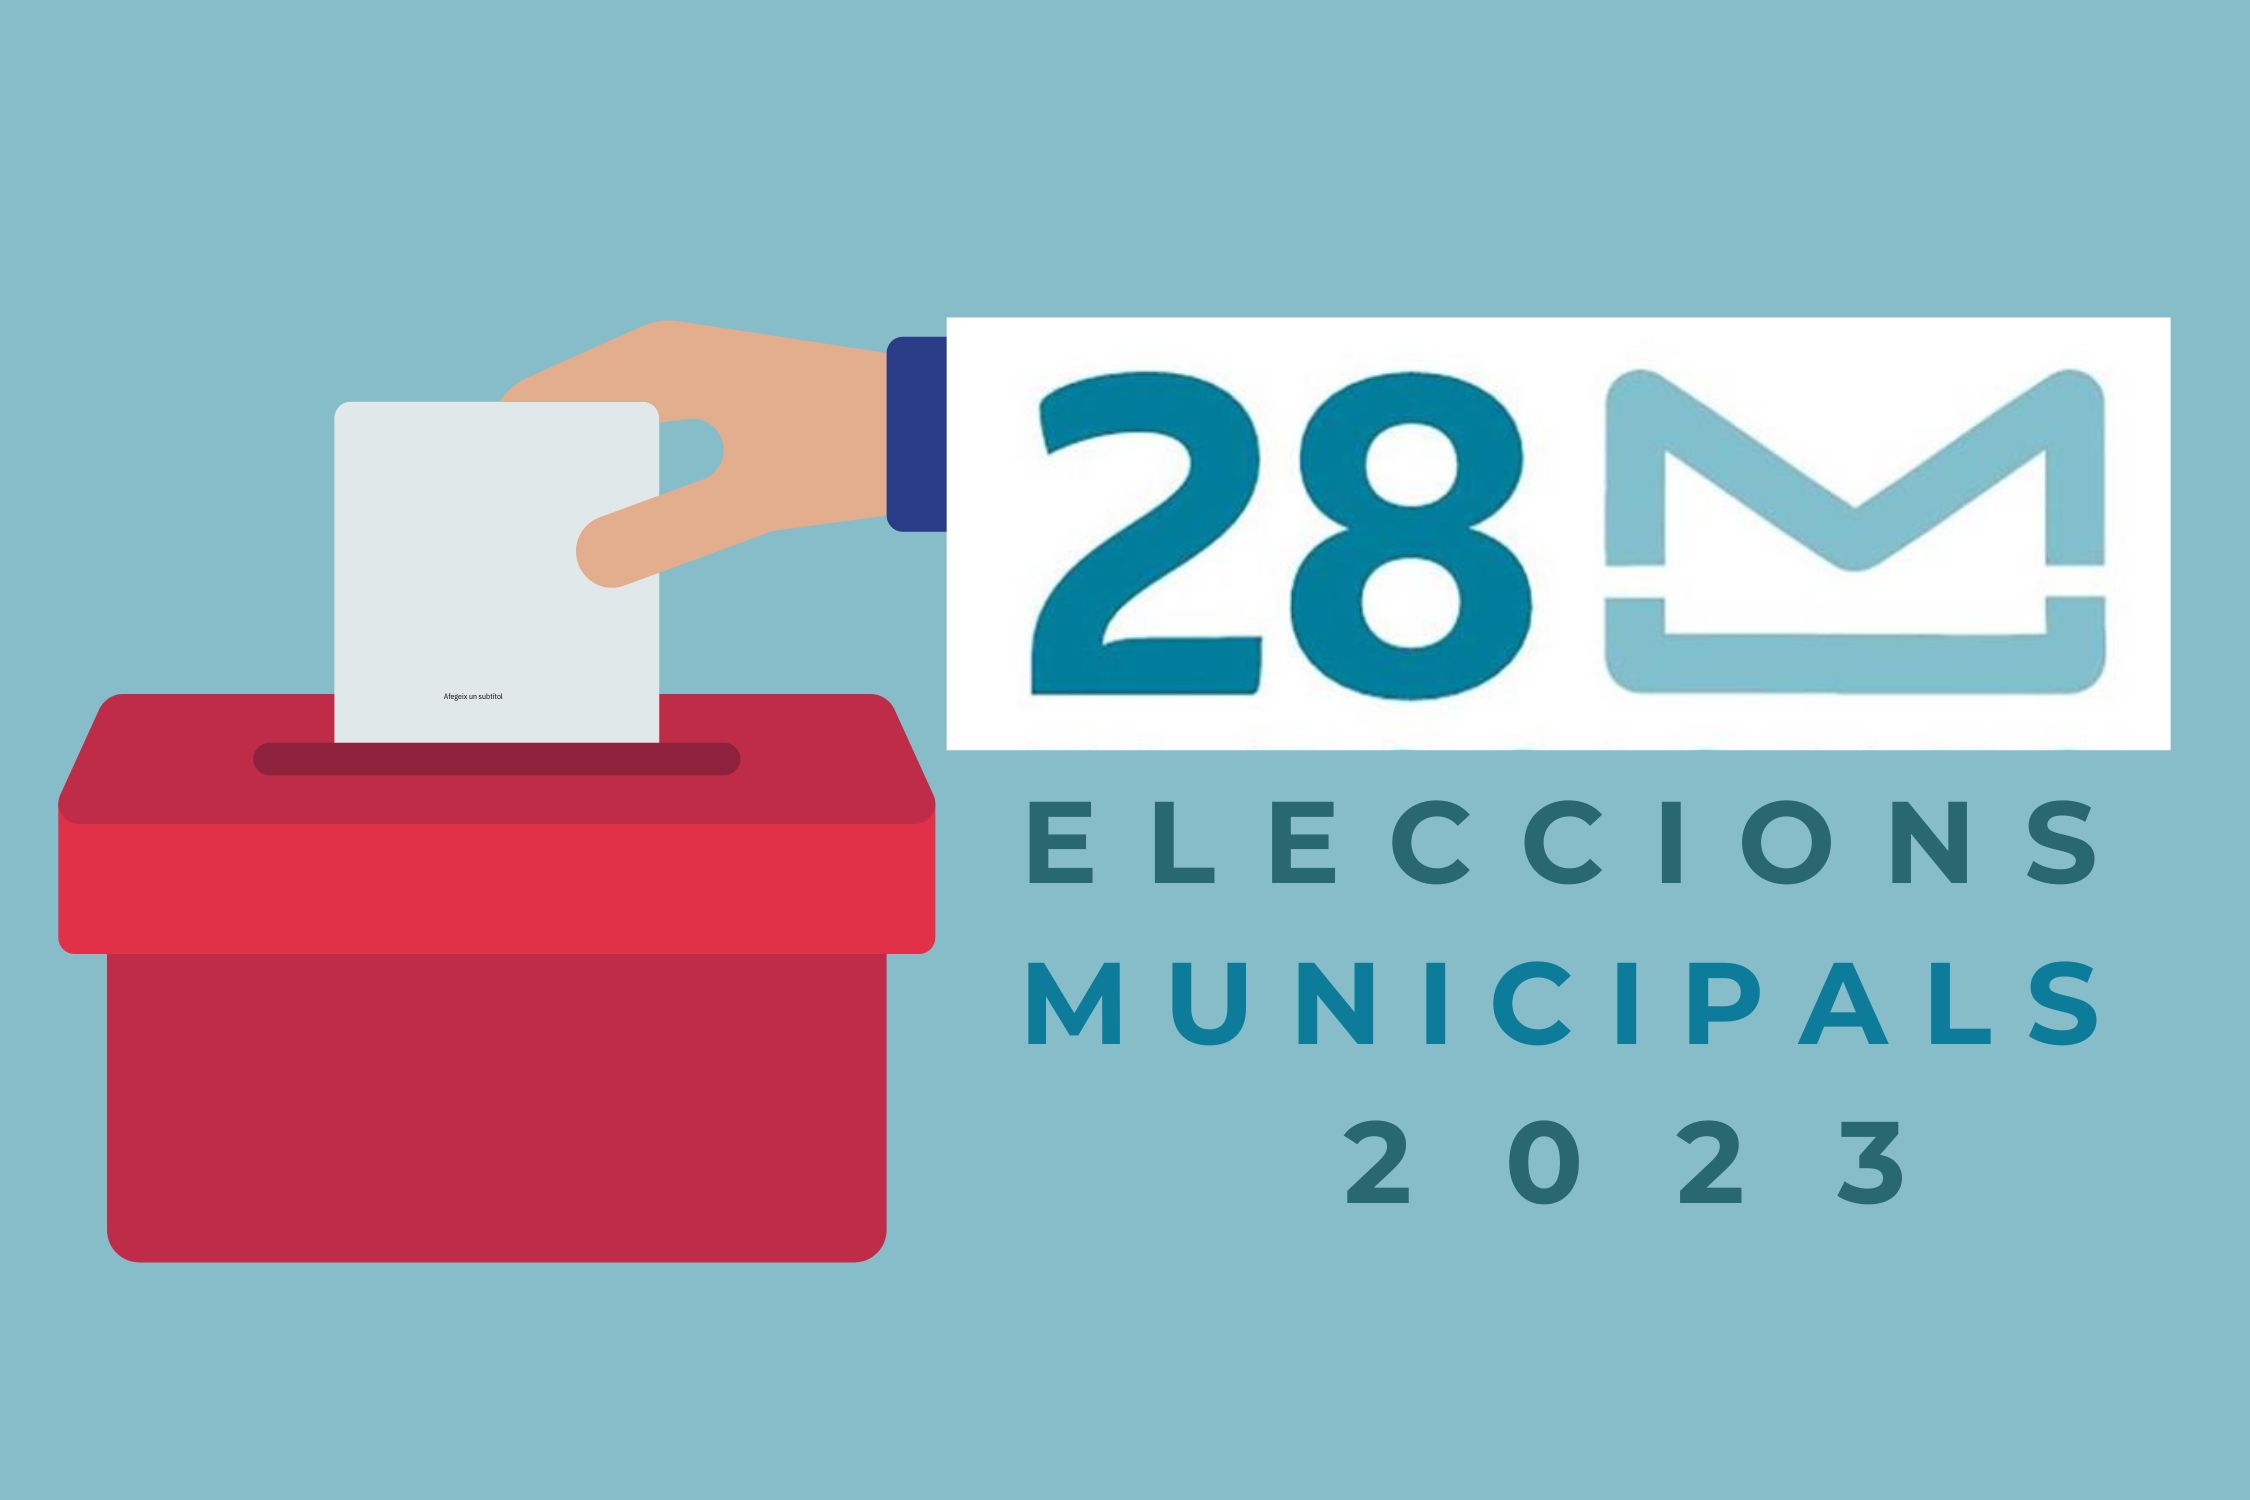 Eleccions Municipals 2023 Fons Blau